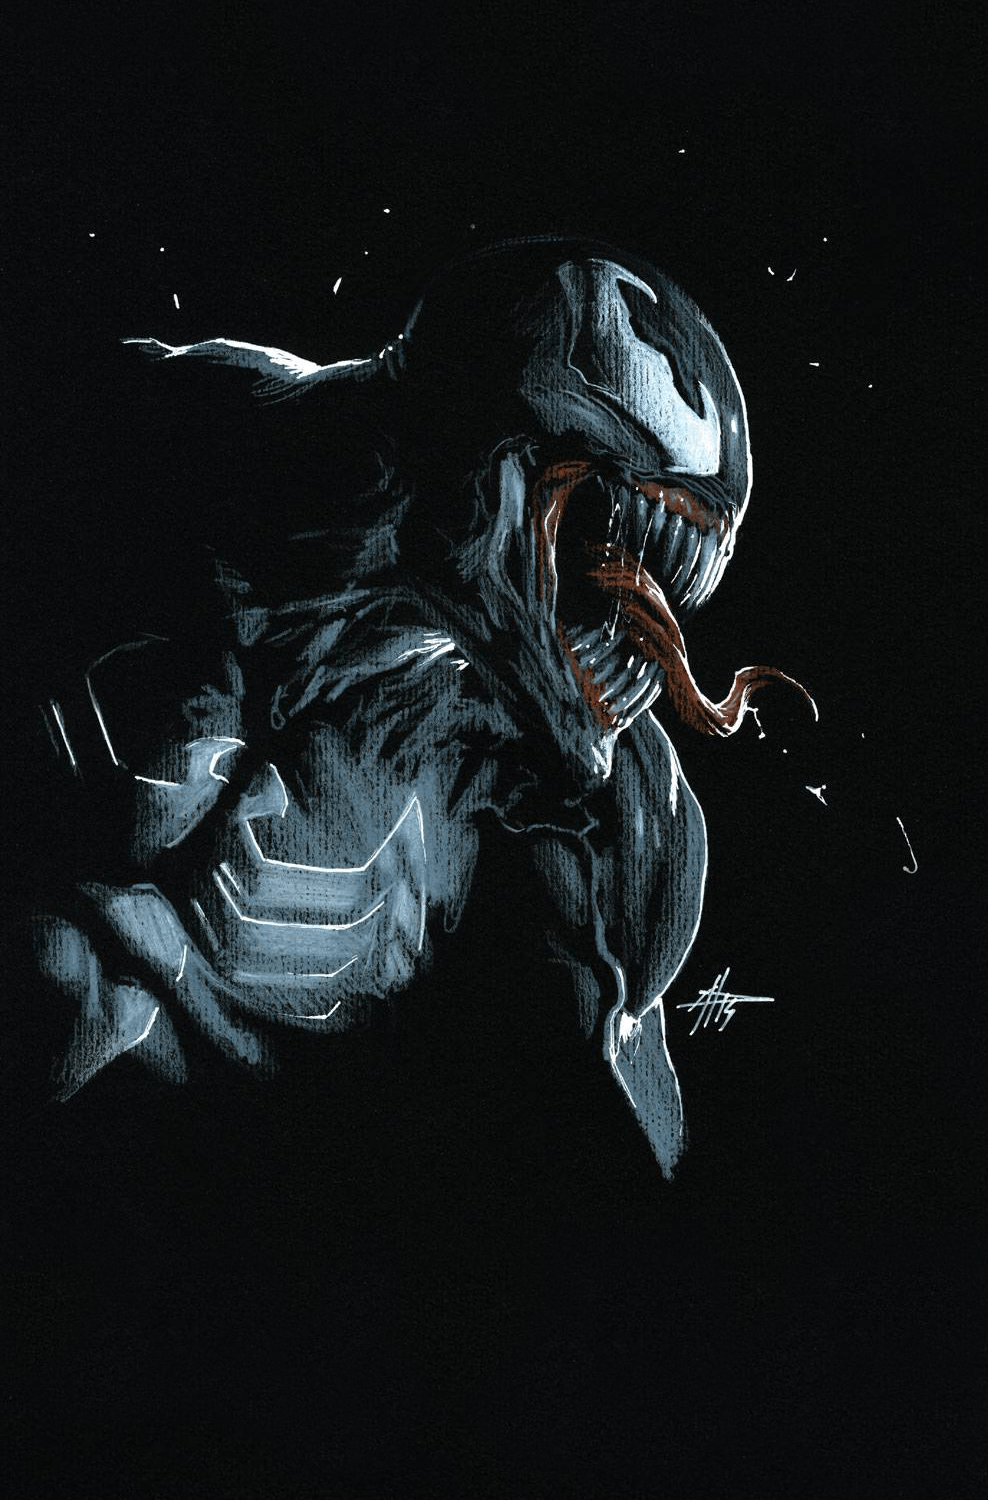 Fondos de pantalla de Venom Mobile: fondos gratuitos de Venom Mobile